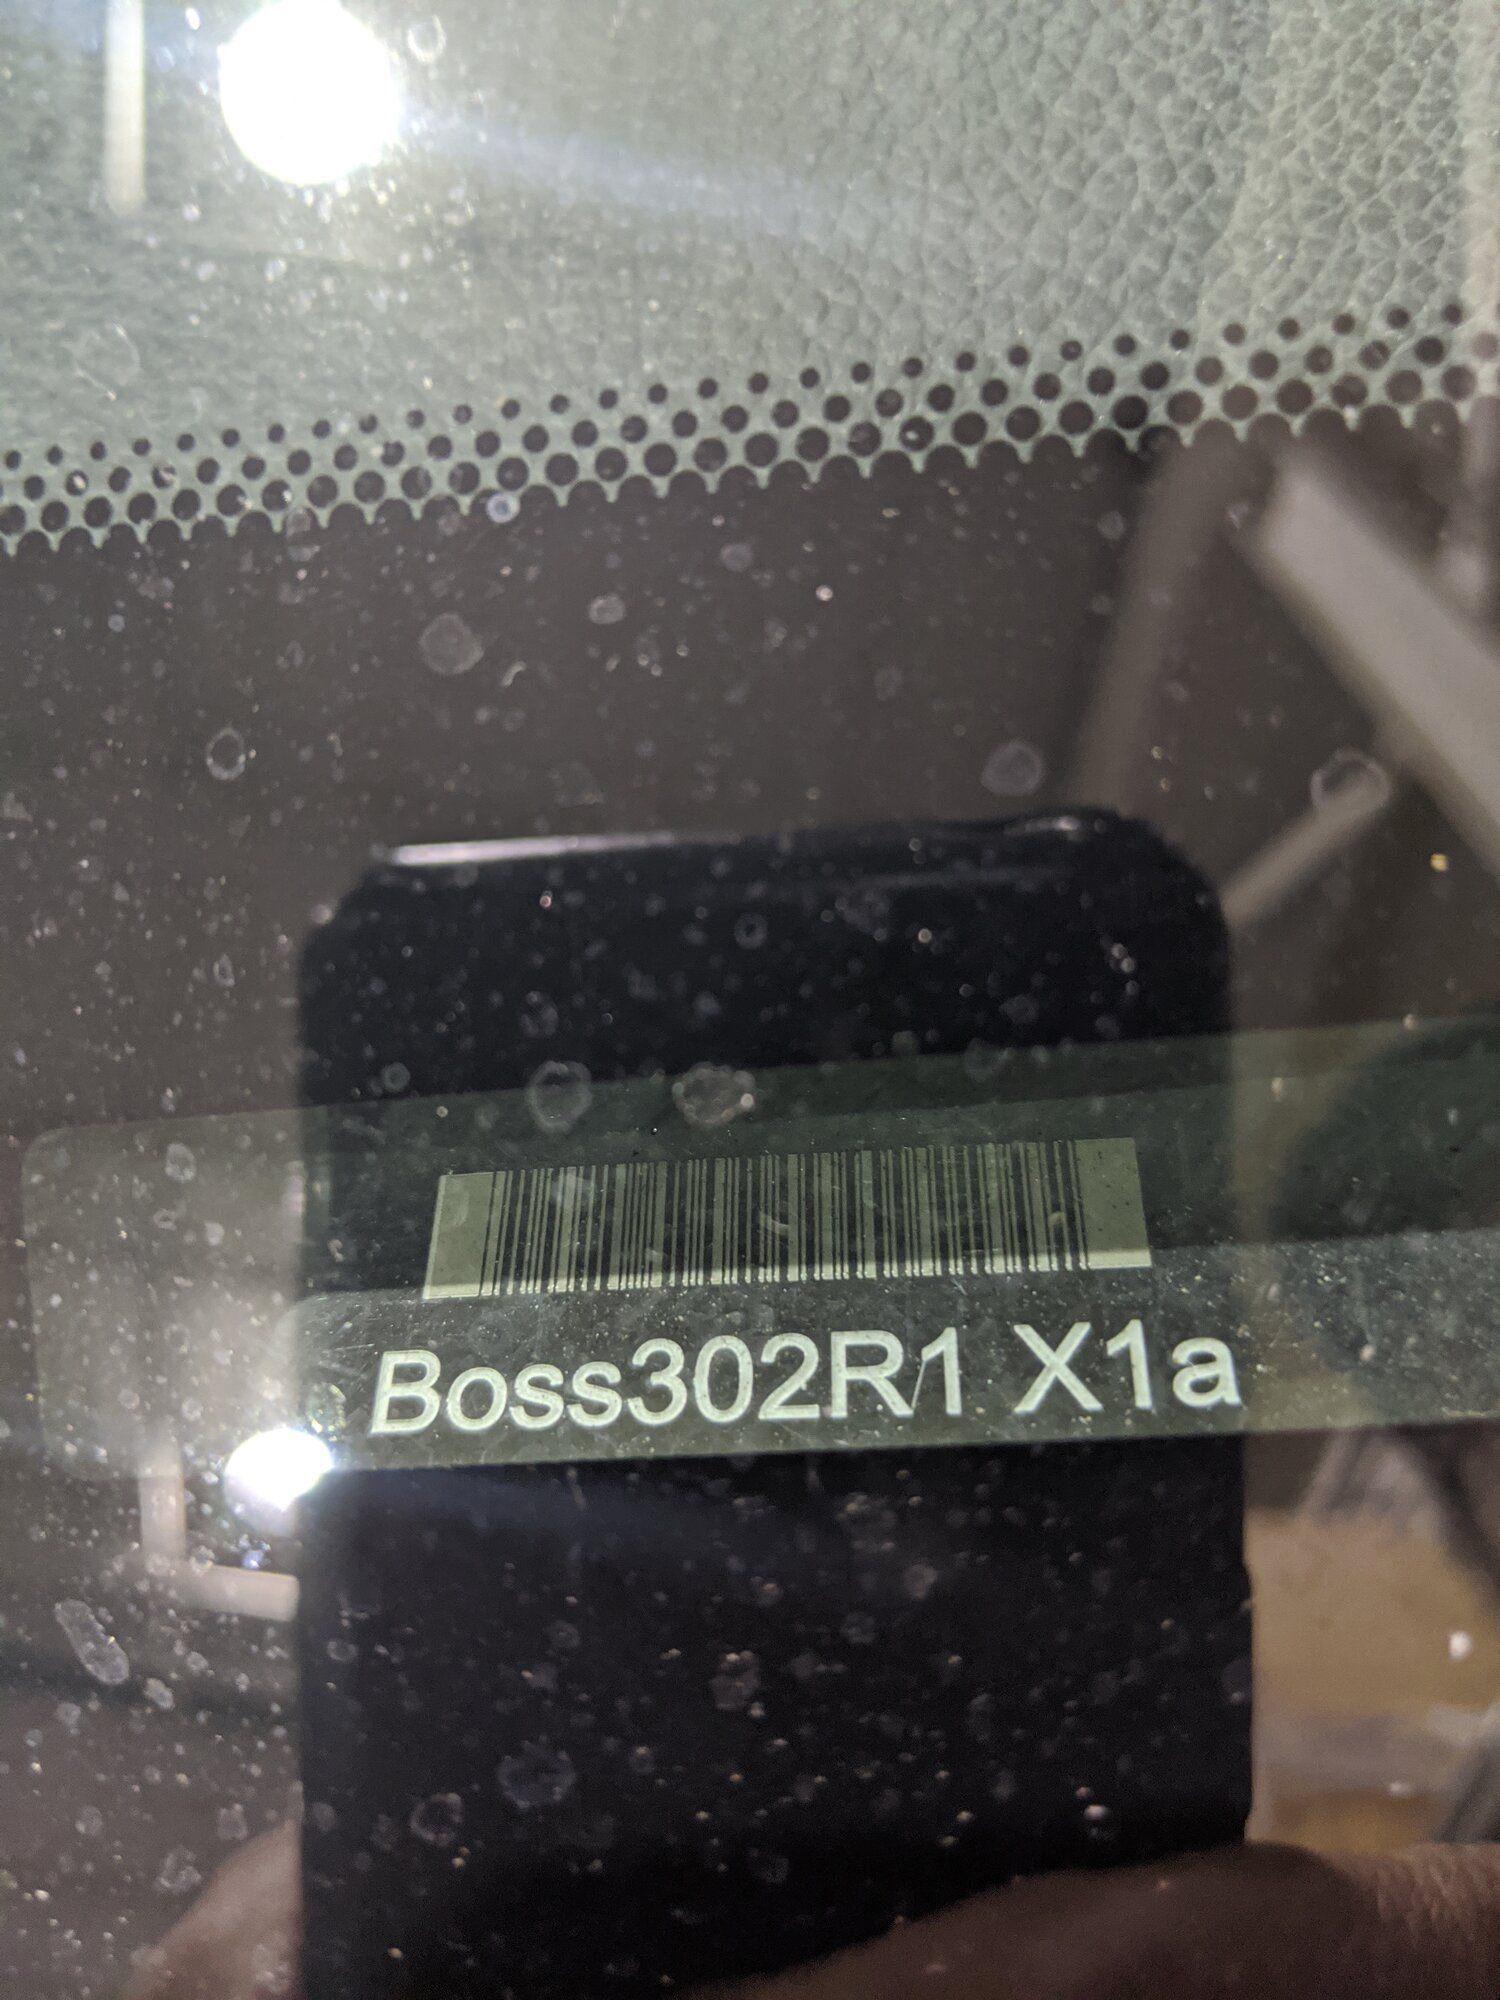 Boss302R1 X1a.jpg